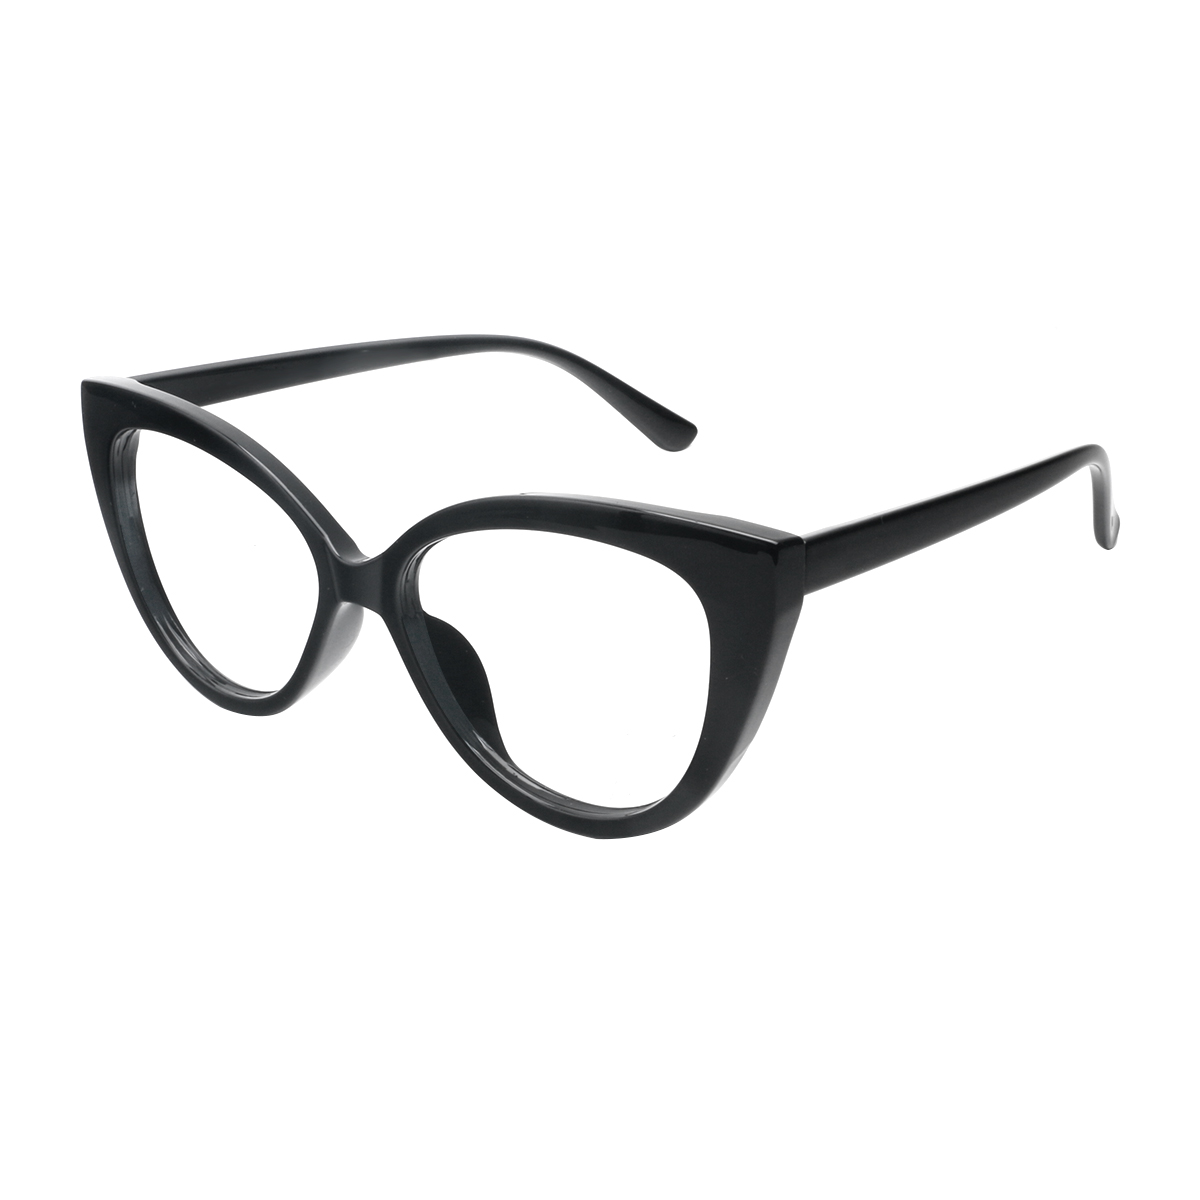 Taras - Cat-eye Black Reading Glasses for Women